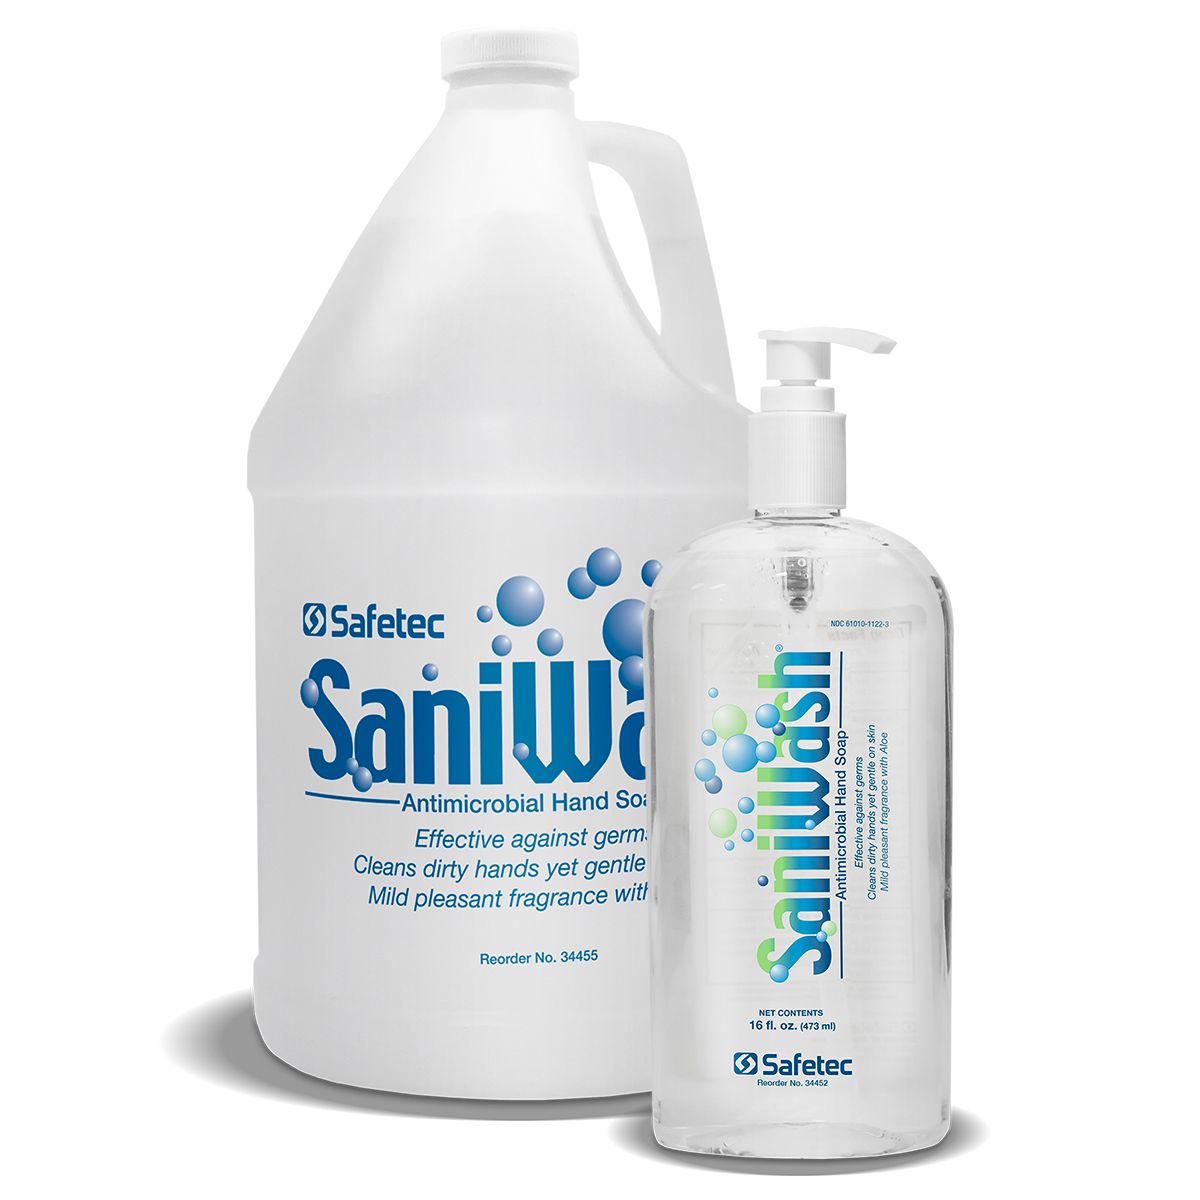 34452和34455 Safetec®SaniWash®抗菌洗手皂(16盎司和1加仑)